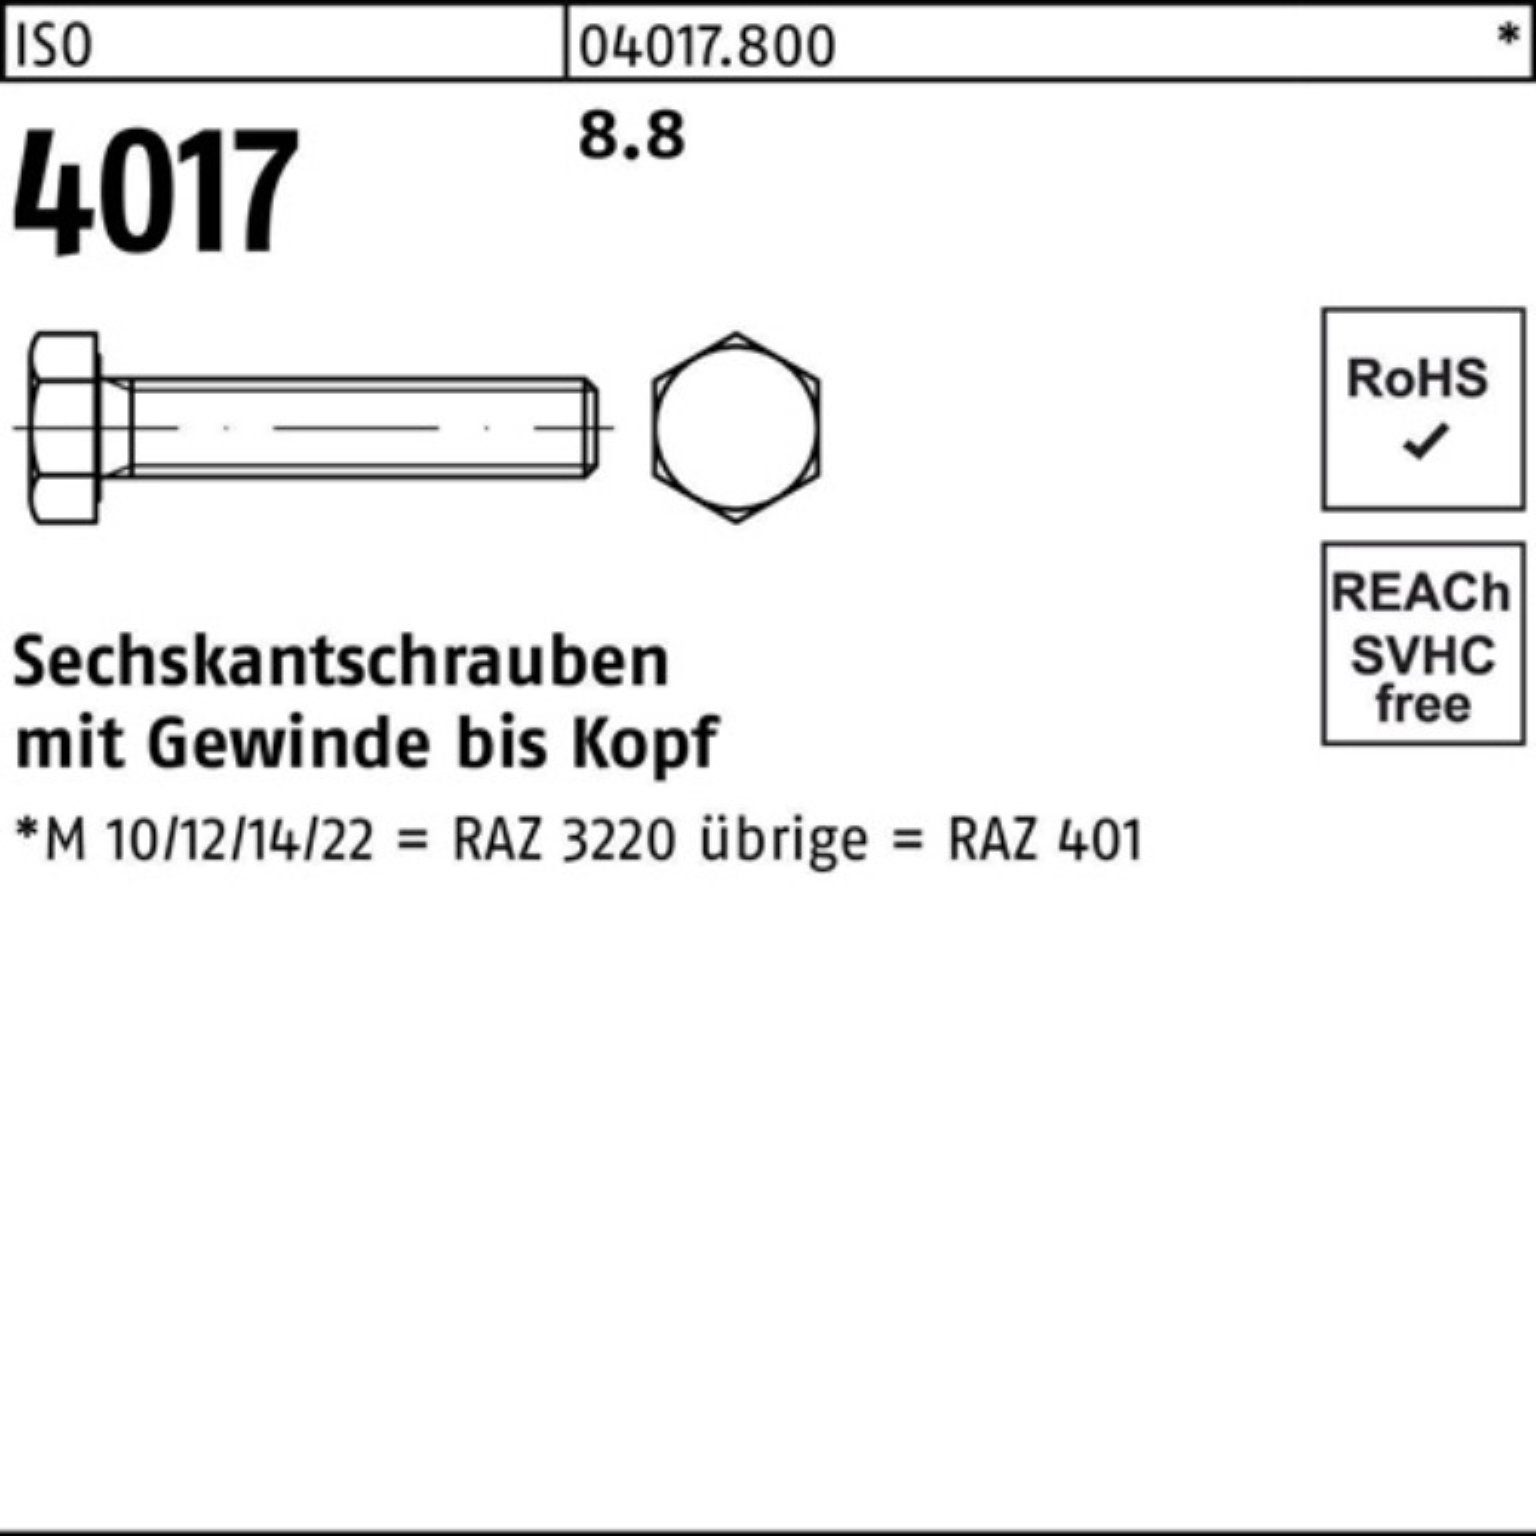 VG Sechskantschraube ISO 40 Stück ISO 4017 Pack Sechskantschraube Bufab 8.8 100er 100 180 M8x